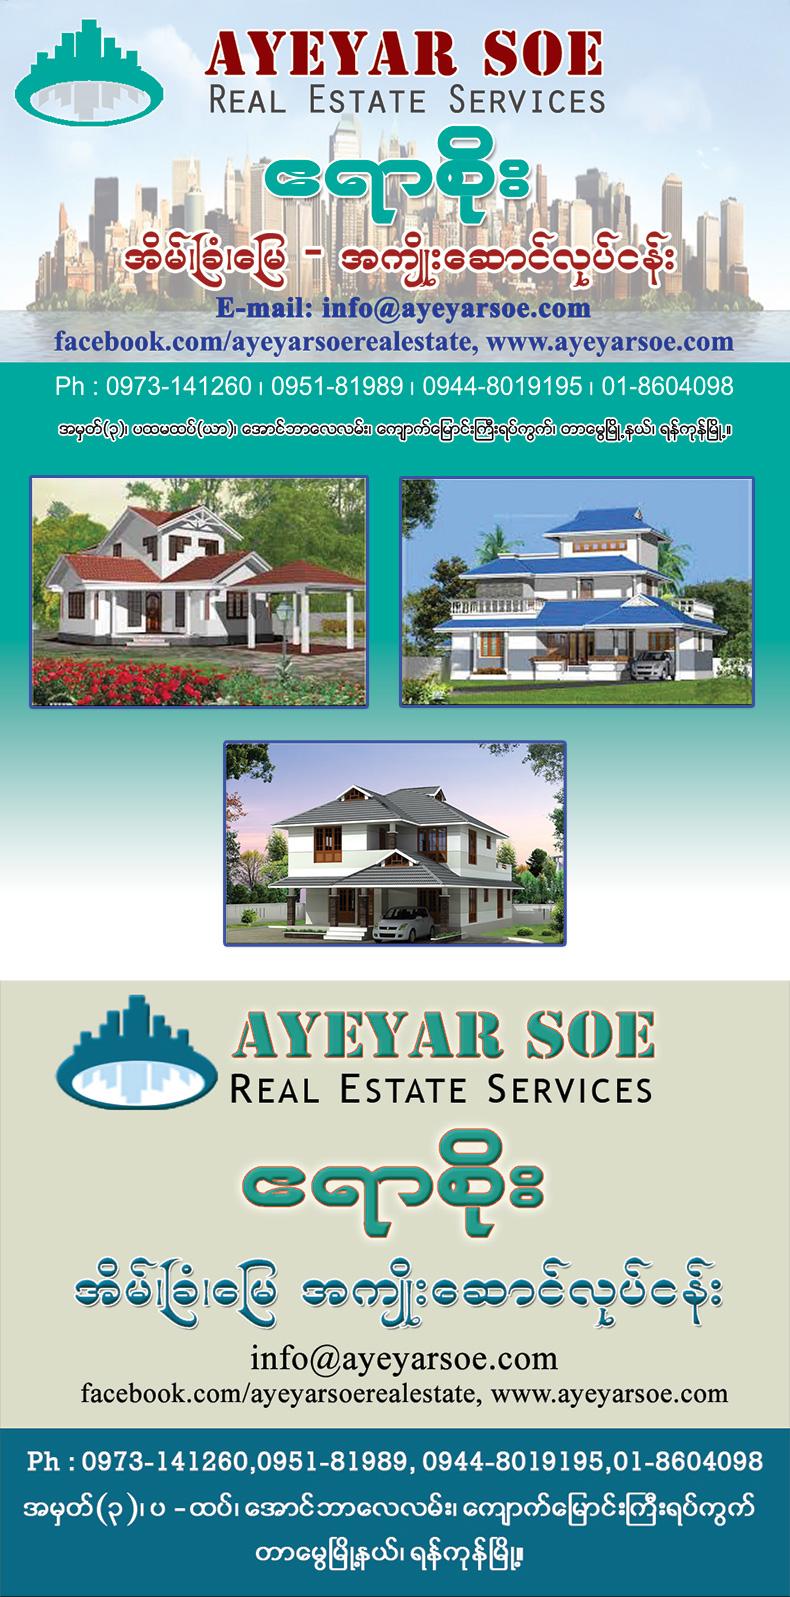 Ayeyar Soe Real Estate Services